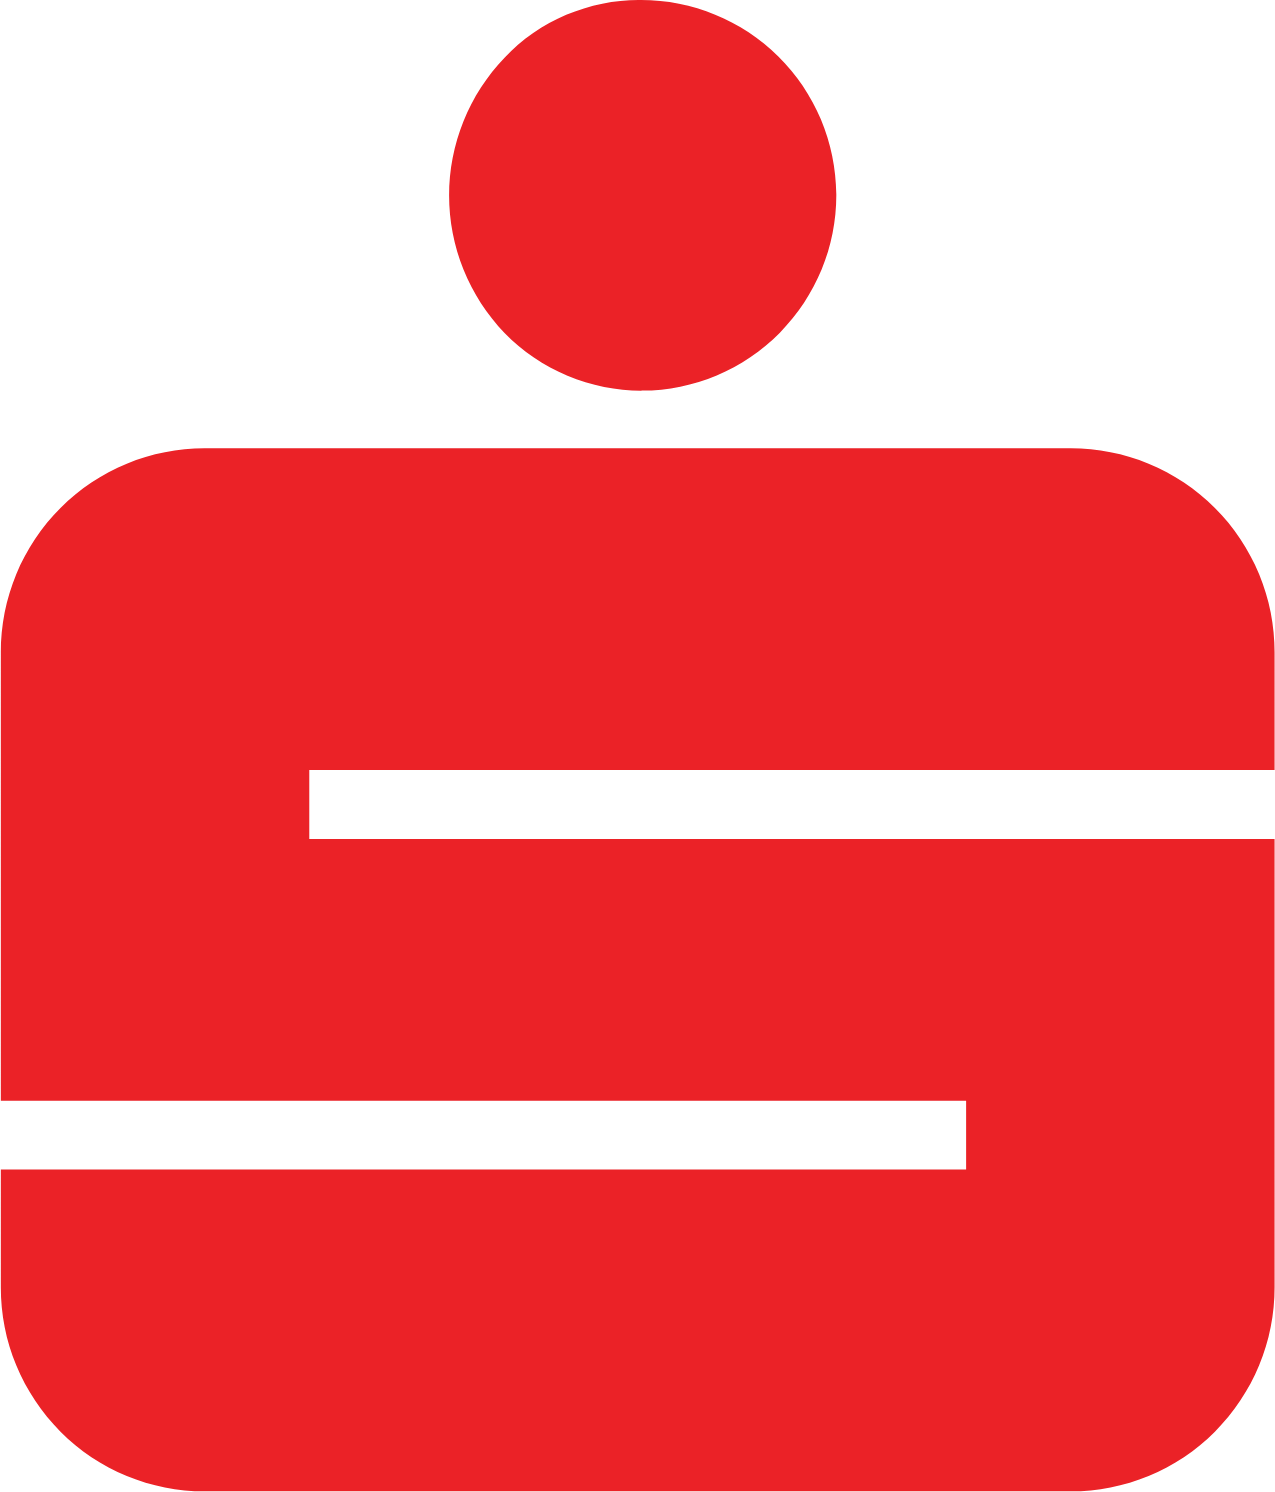 Erste Group Bank logo (PNG transparent)